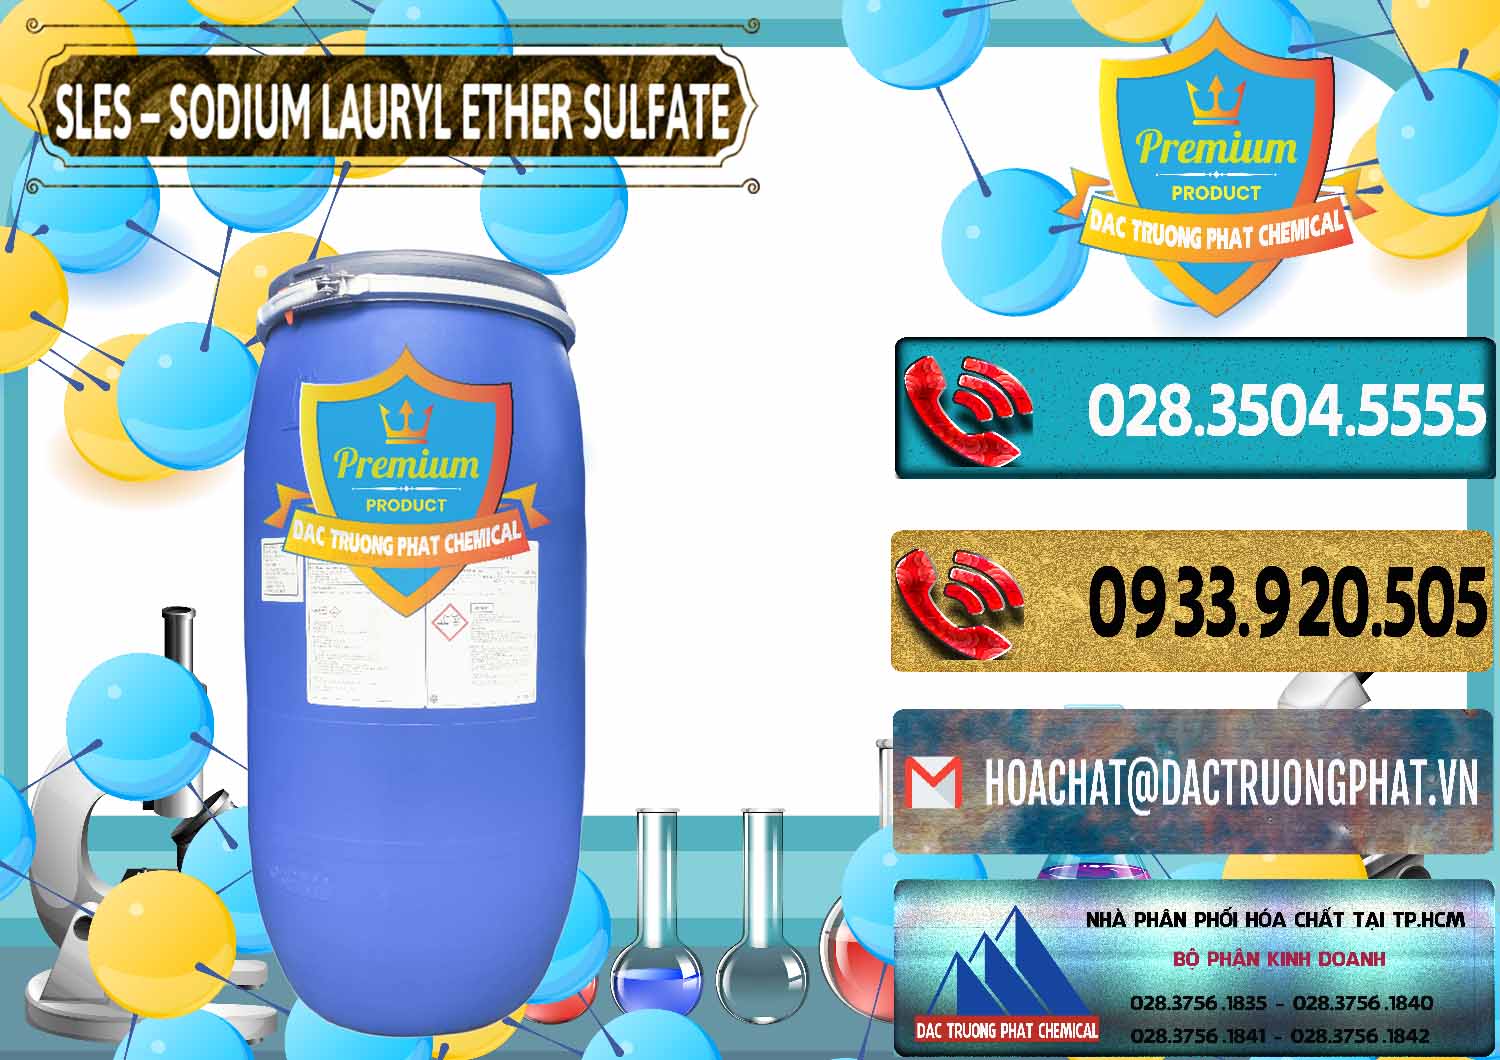 Chuyên bán và phân phối Chất Tạo Bọt Sles - Sodium Lauryl Ether Sulphate Kao Indonesia - 0046 - Công ty kinh doanh và phân phối hóa chất tại TP.HCM - hoachatdetnhuom.com